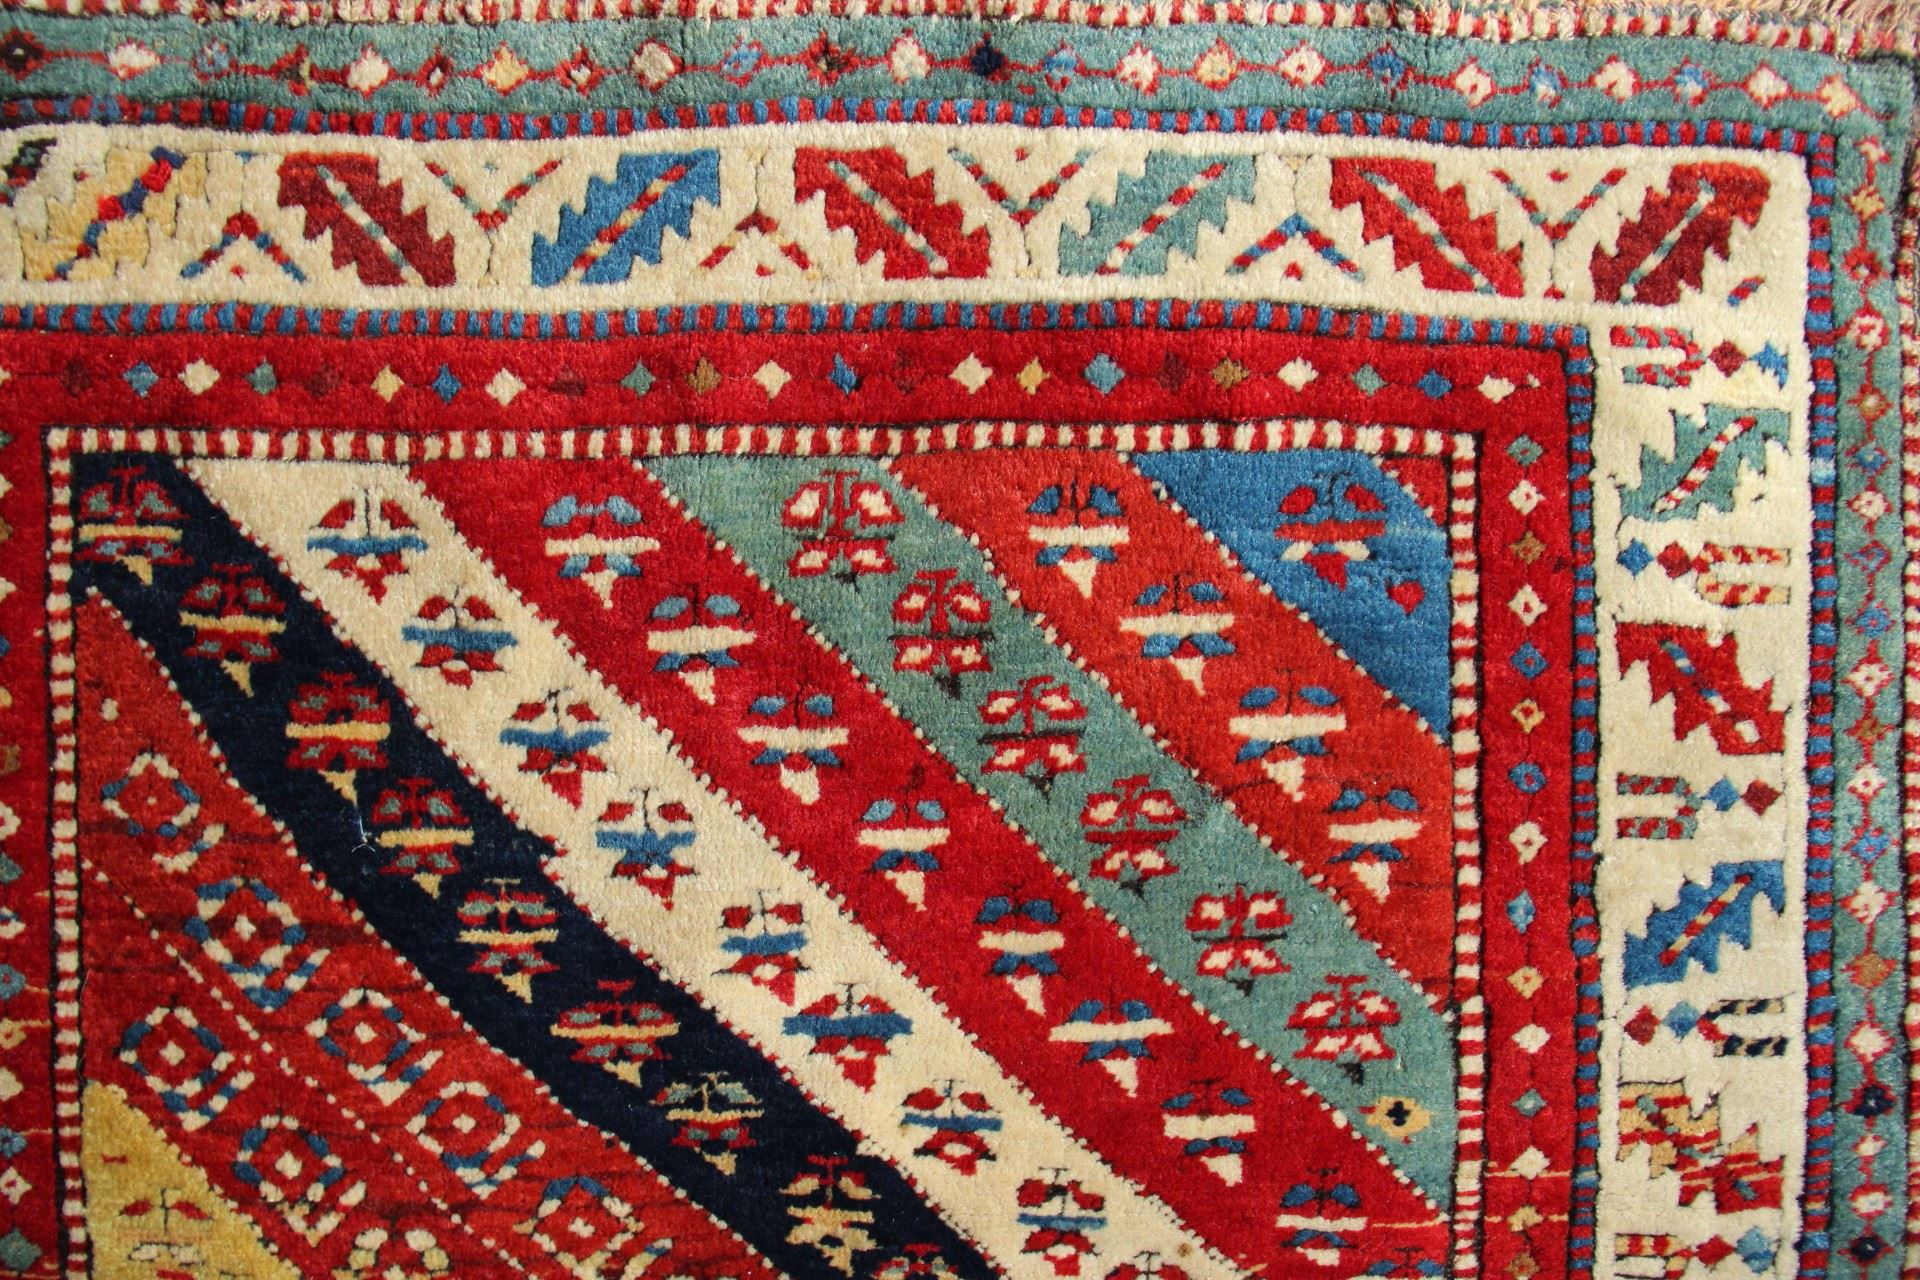 Kazak region long rug, west Caucasus, 19th century. James Cohen, London 